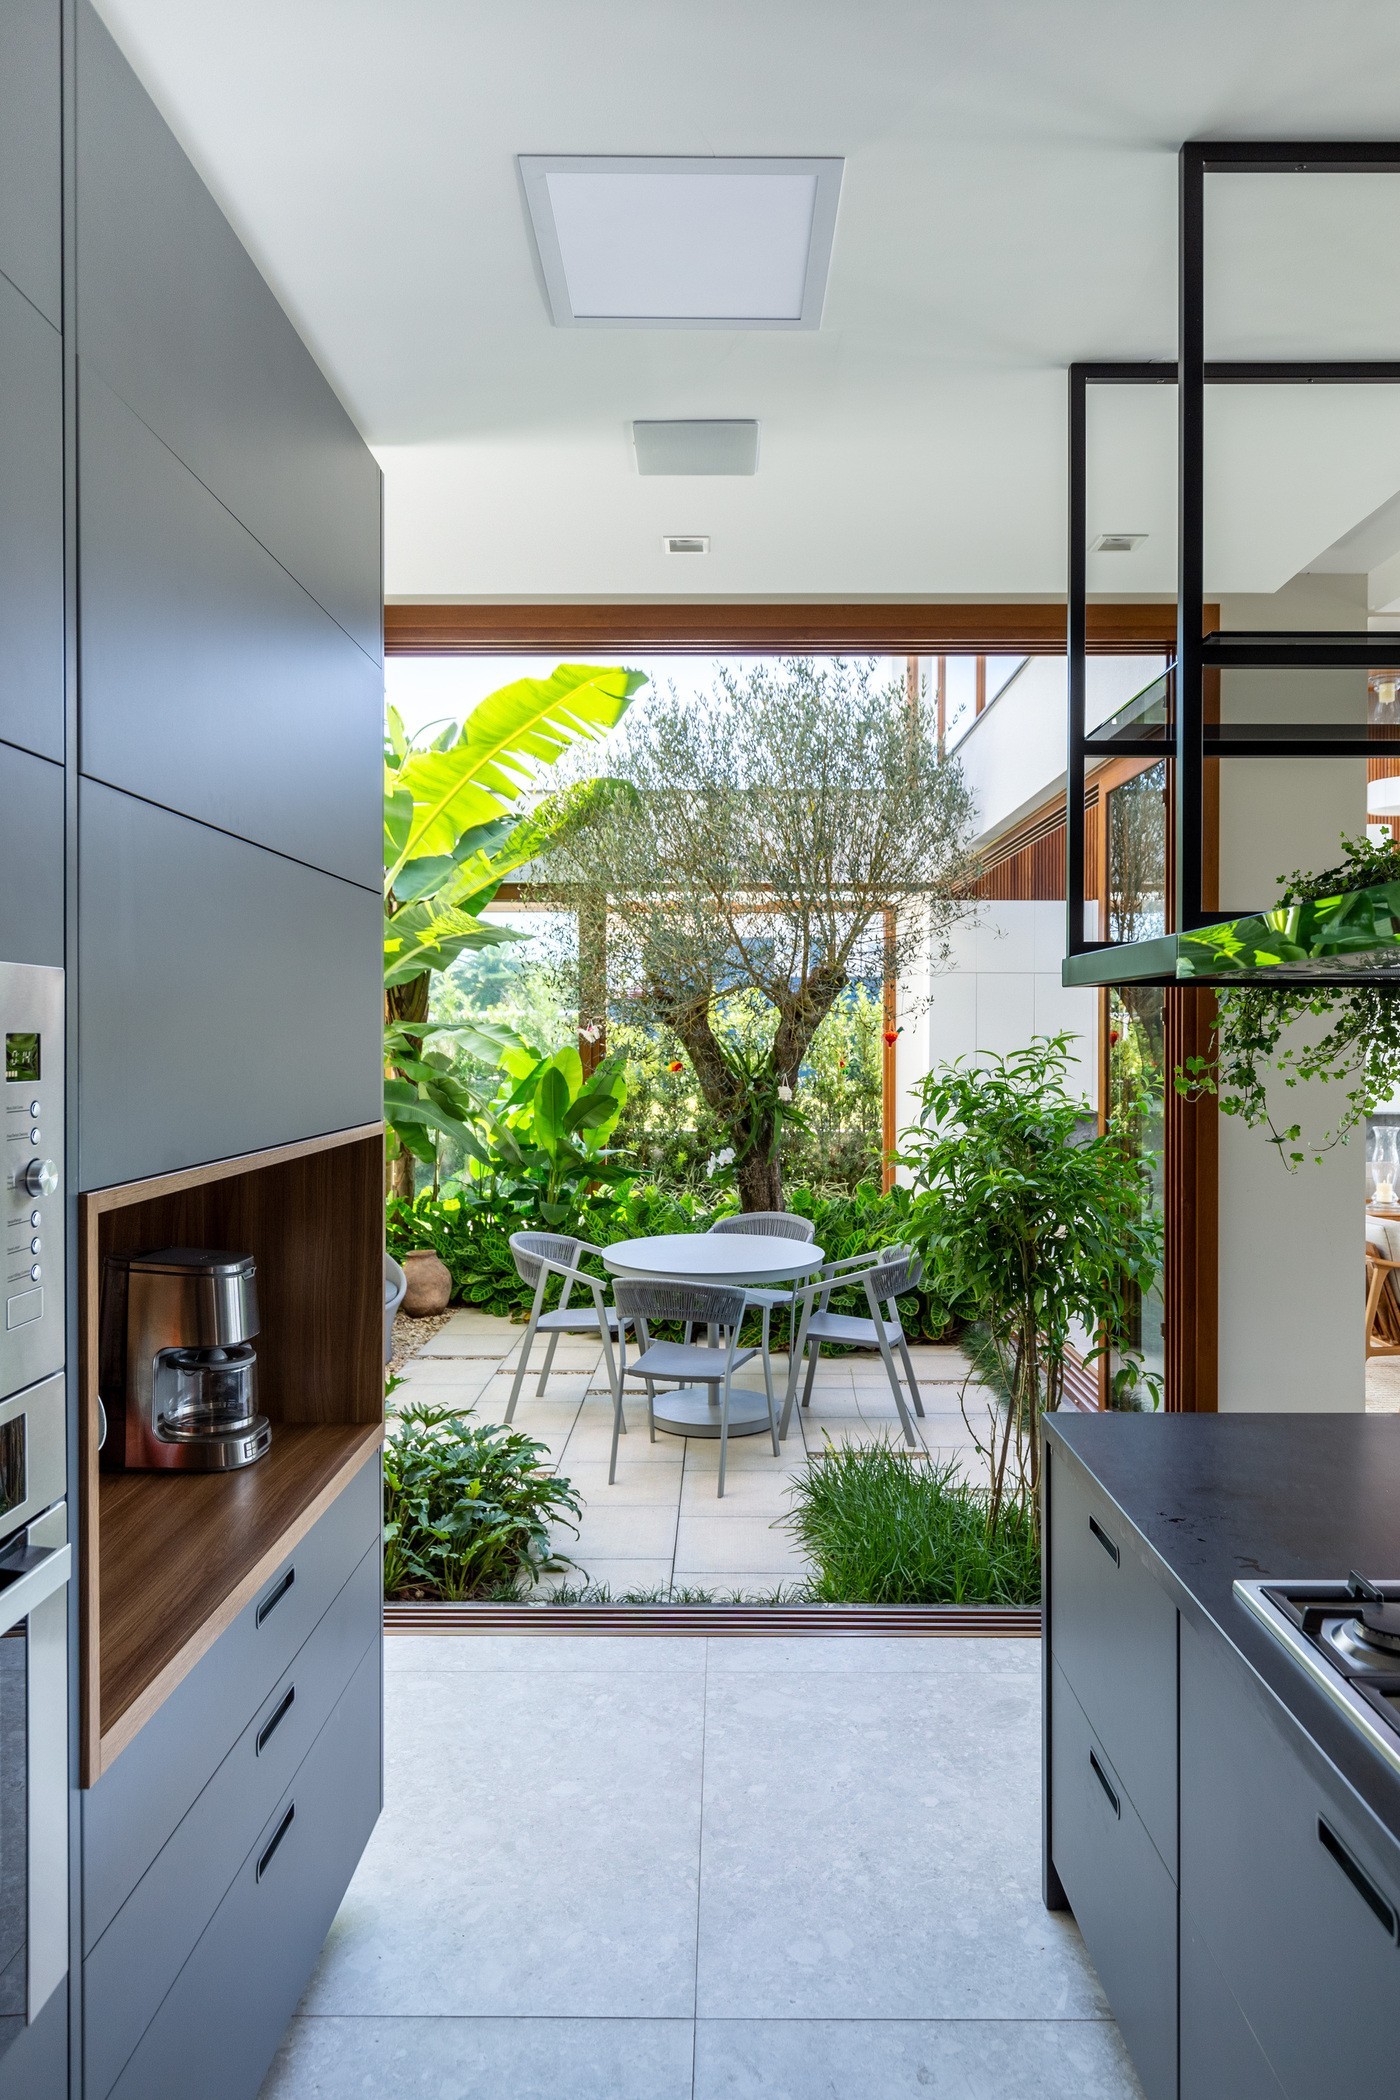 5 plantas que vão bem em qualquer ambiente da casa (Foto: Marcelo Donadussi)